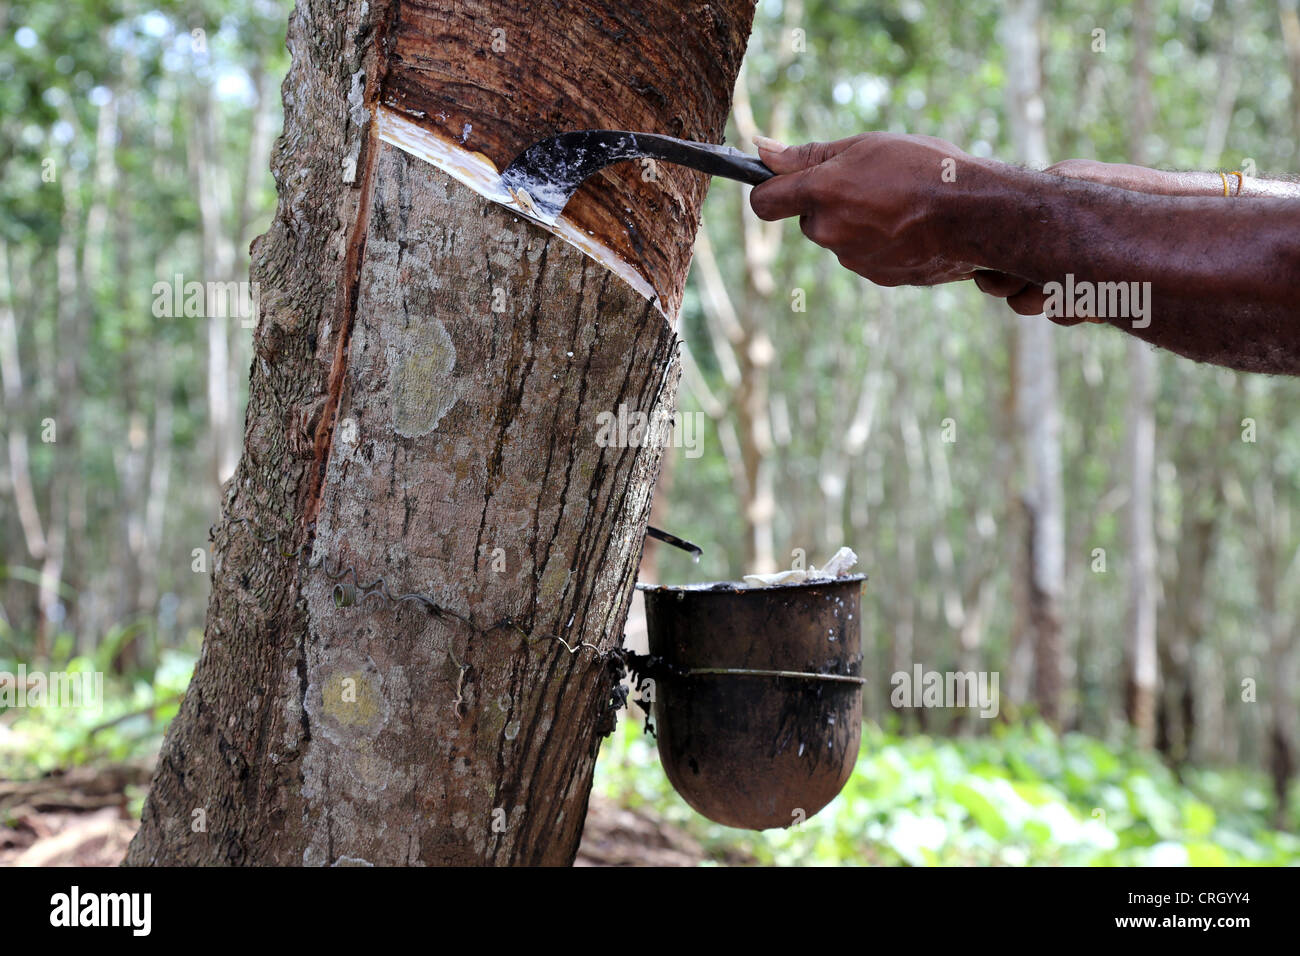 L'extraction du latex de l'hévéa, Province du Centre, la Papouasie-Nouvelle-Guinée Banque D'Images